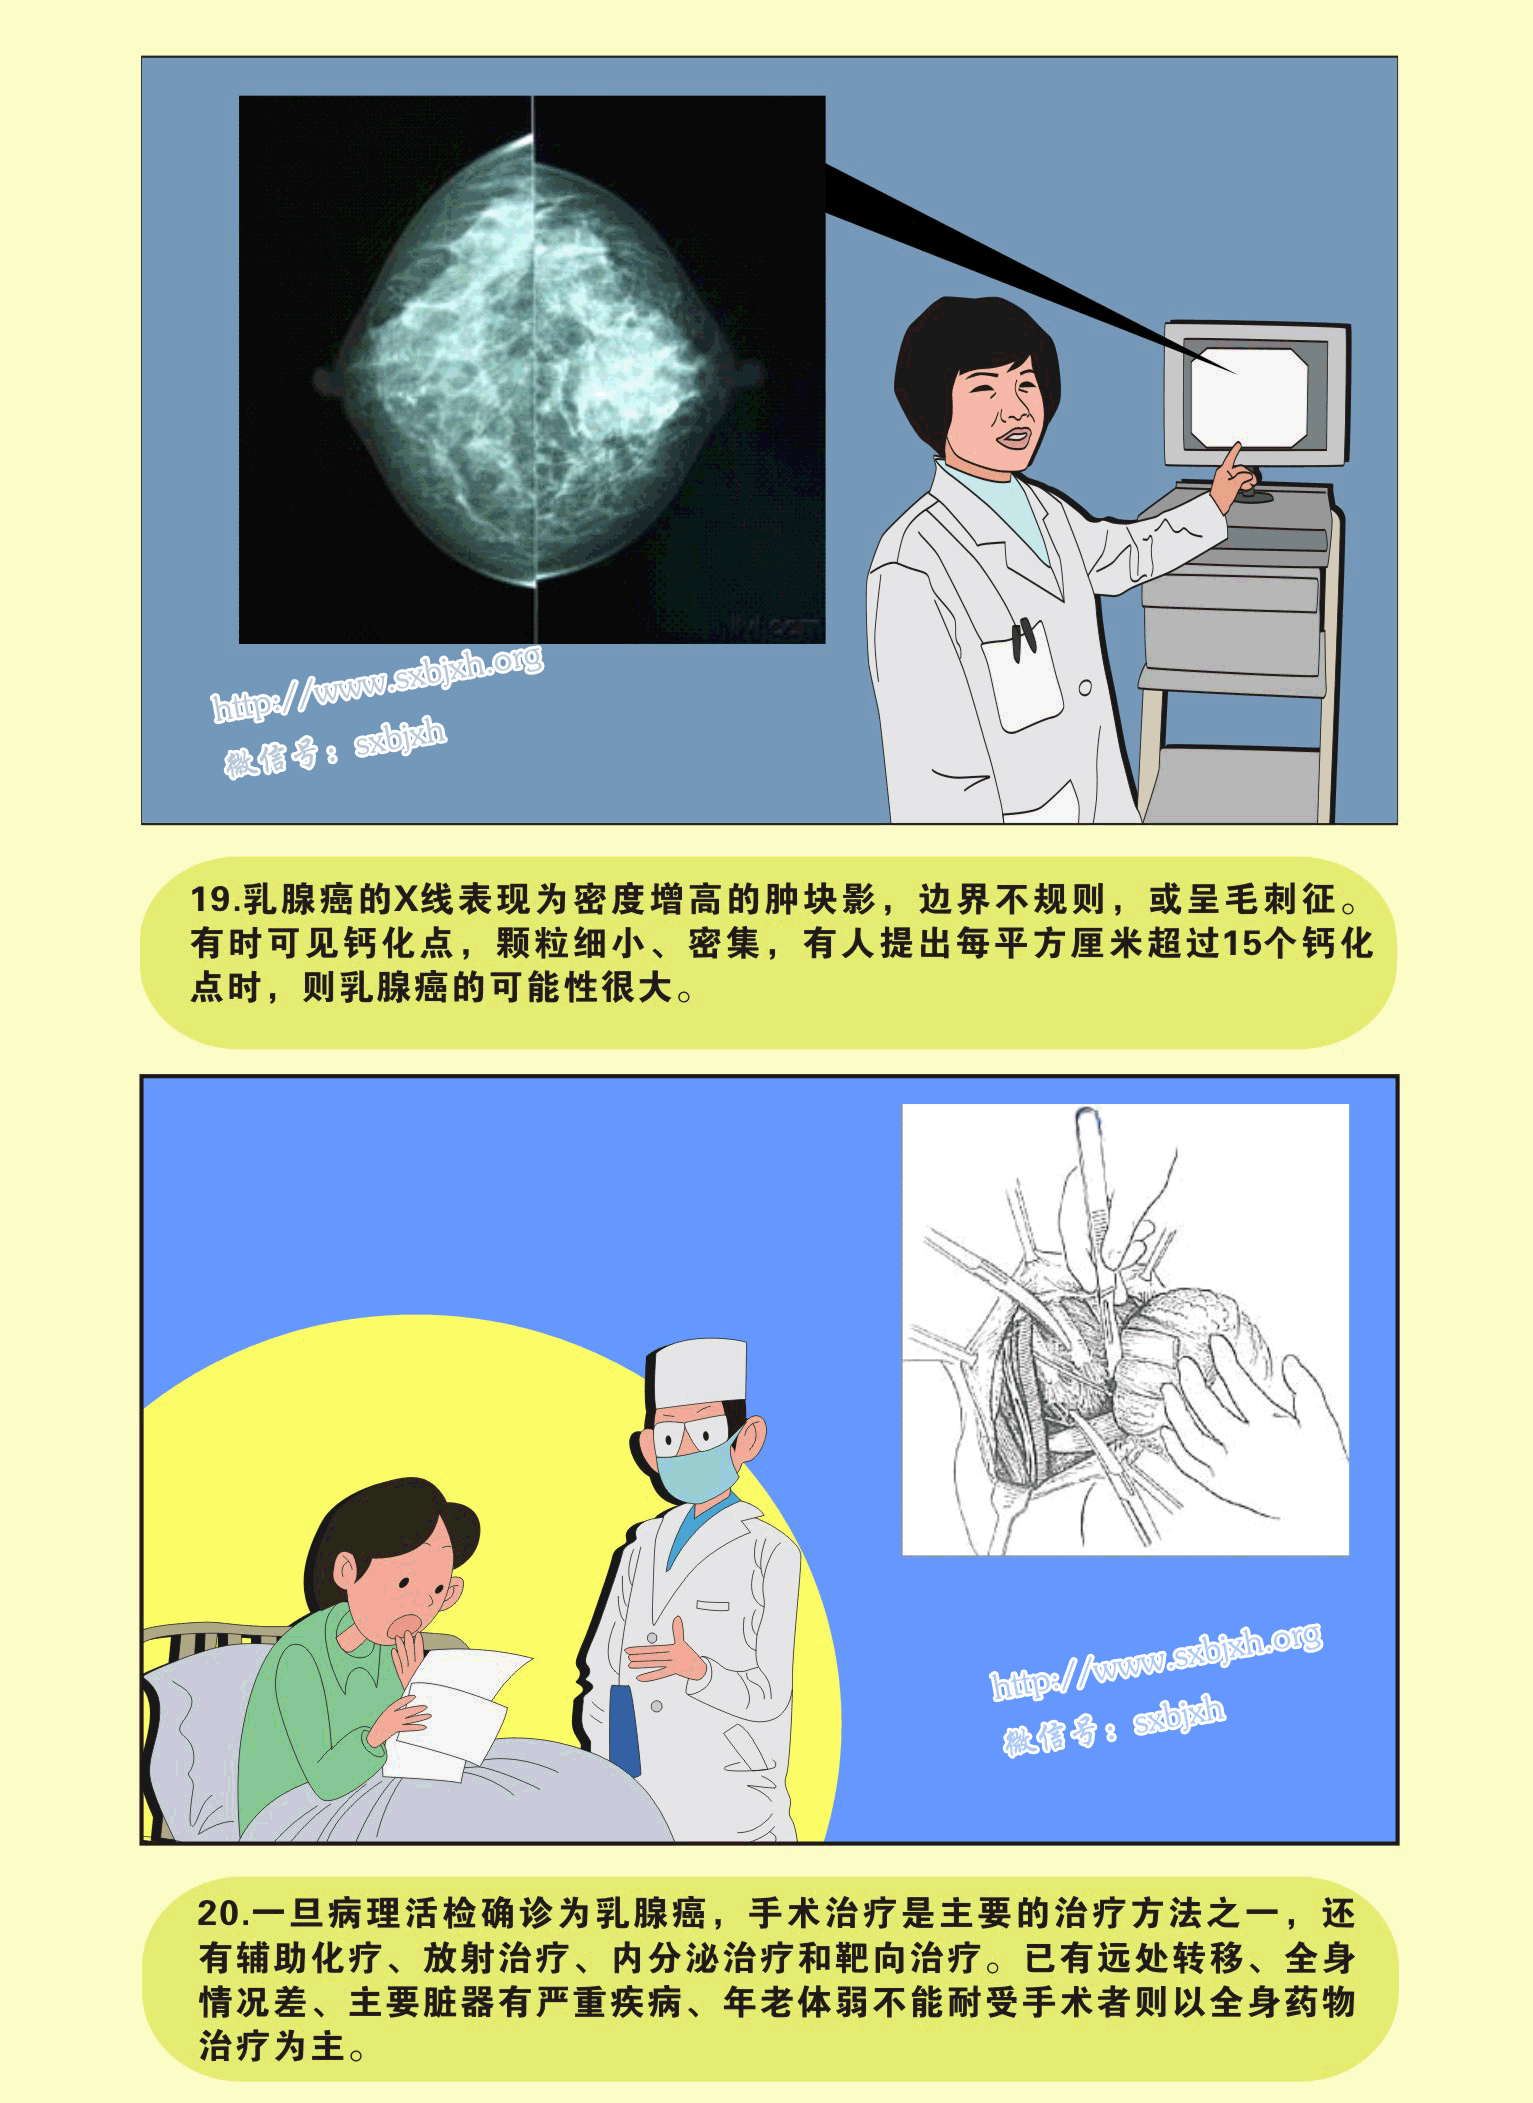 【附图】 乳腺磁共振检查技术 _乳腺肿瘤学 | 天山医学院